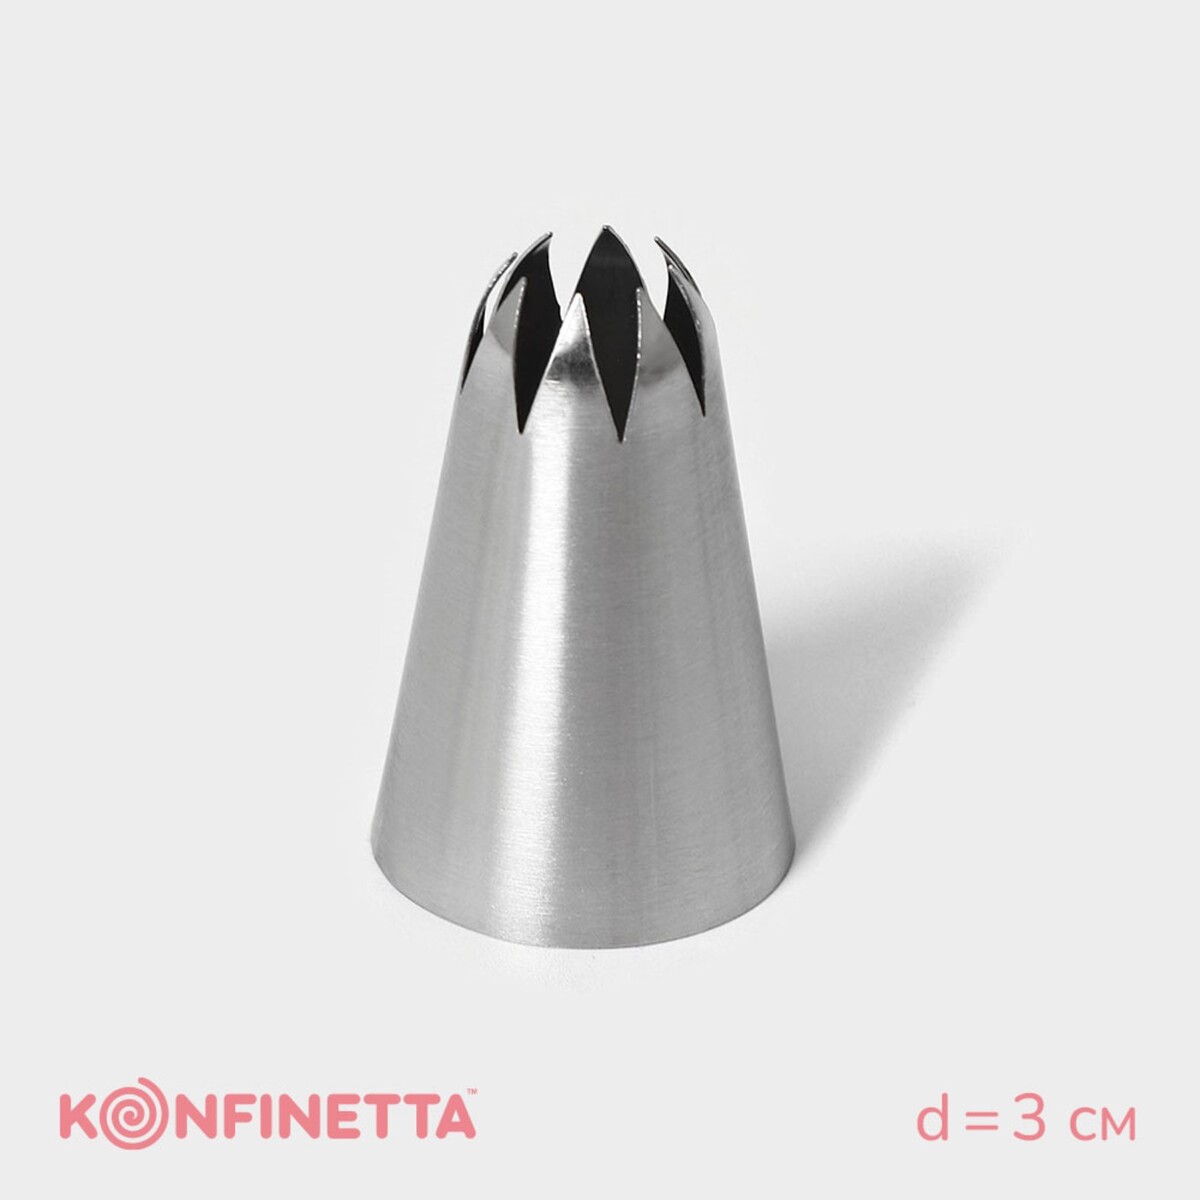 Насадка кондитерская konfinetta насадка кондитерская konfinetta d 3 см выход 1 7 см нержавеющая сталь